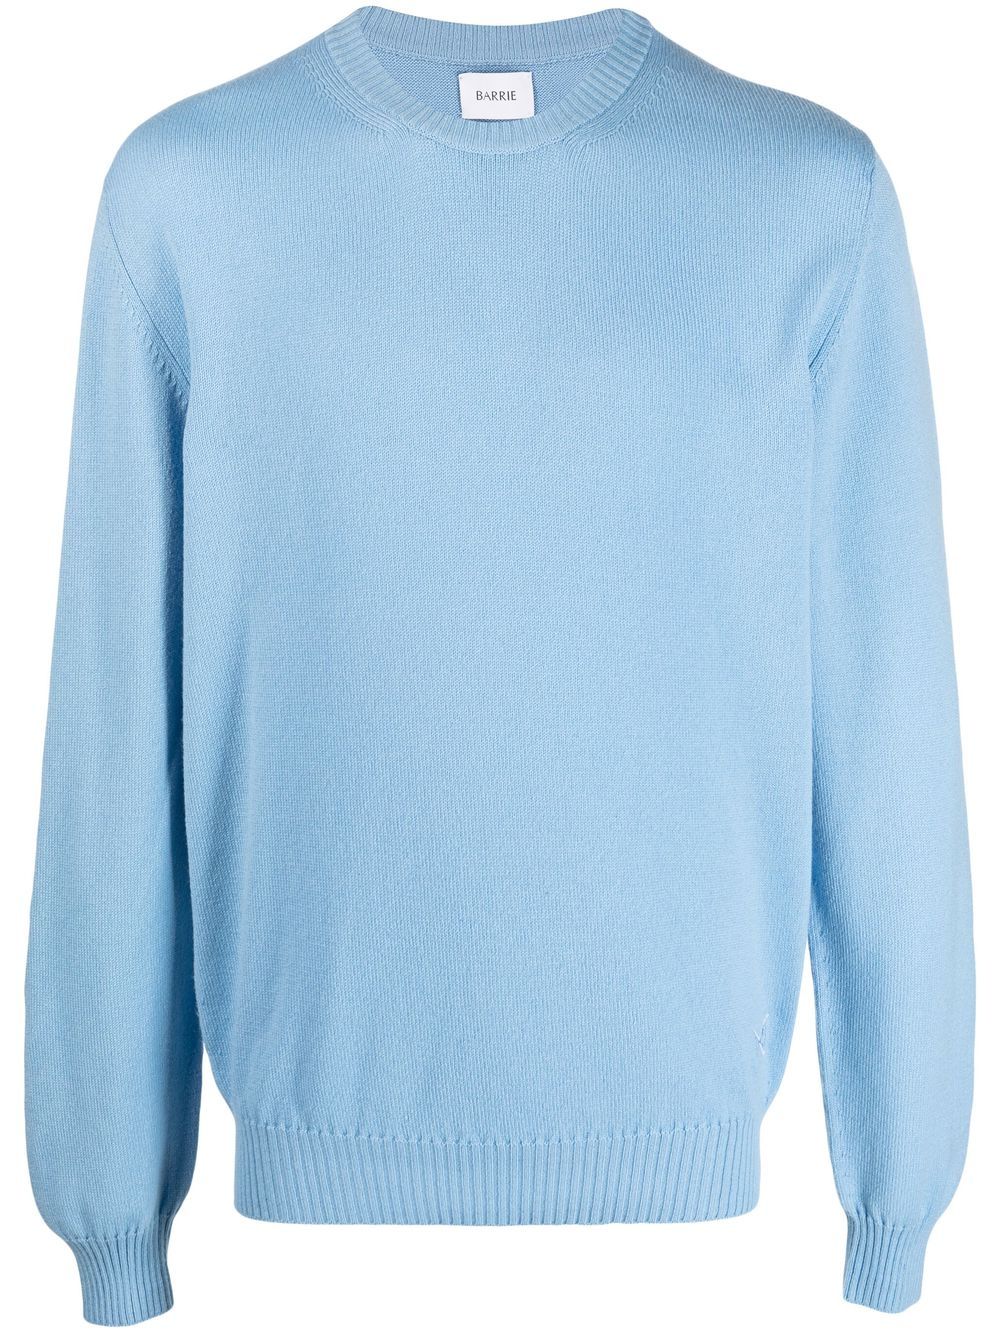 Barrie round neck cashmere sweater - Blue von Barrie